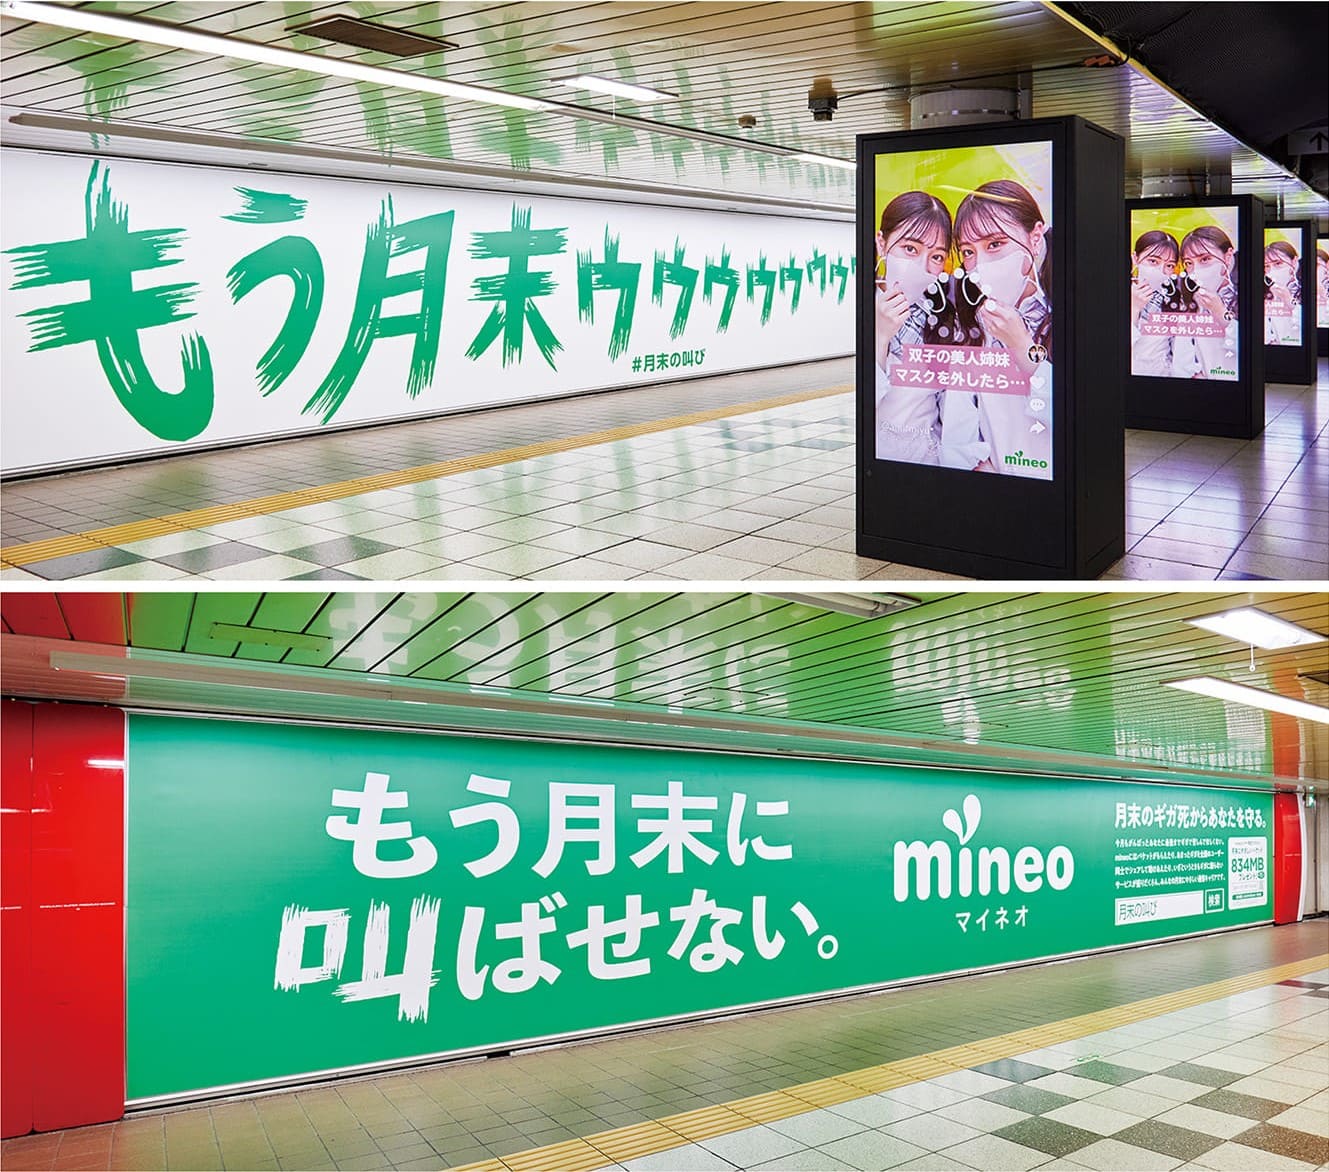 新宿駅に掲出された「月末の叫び」広告。